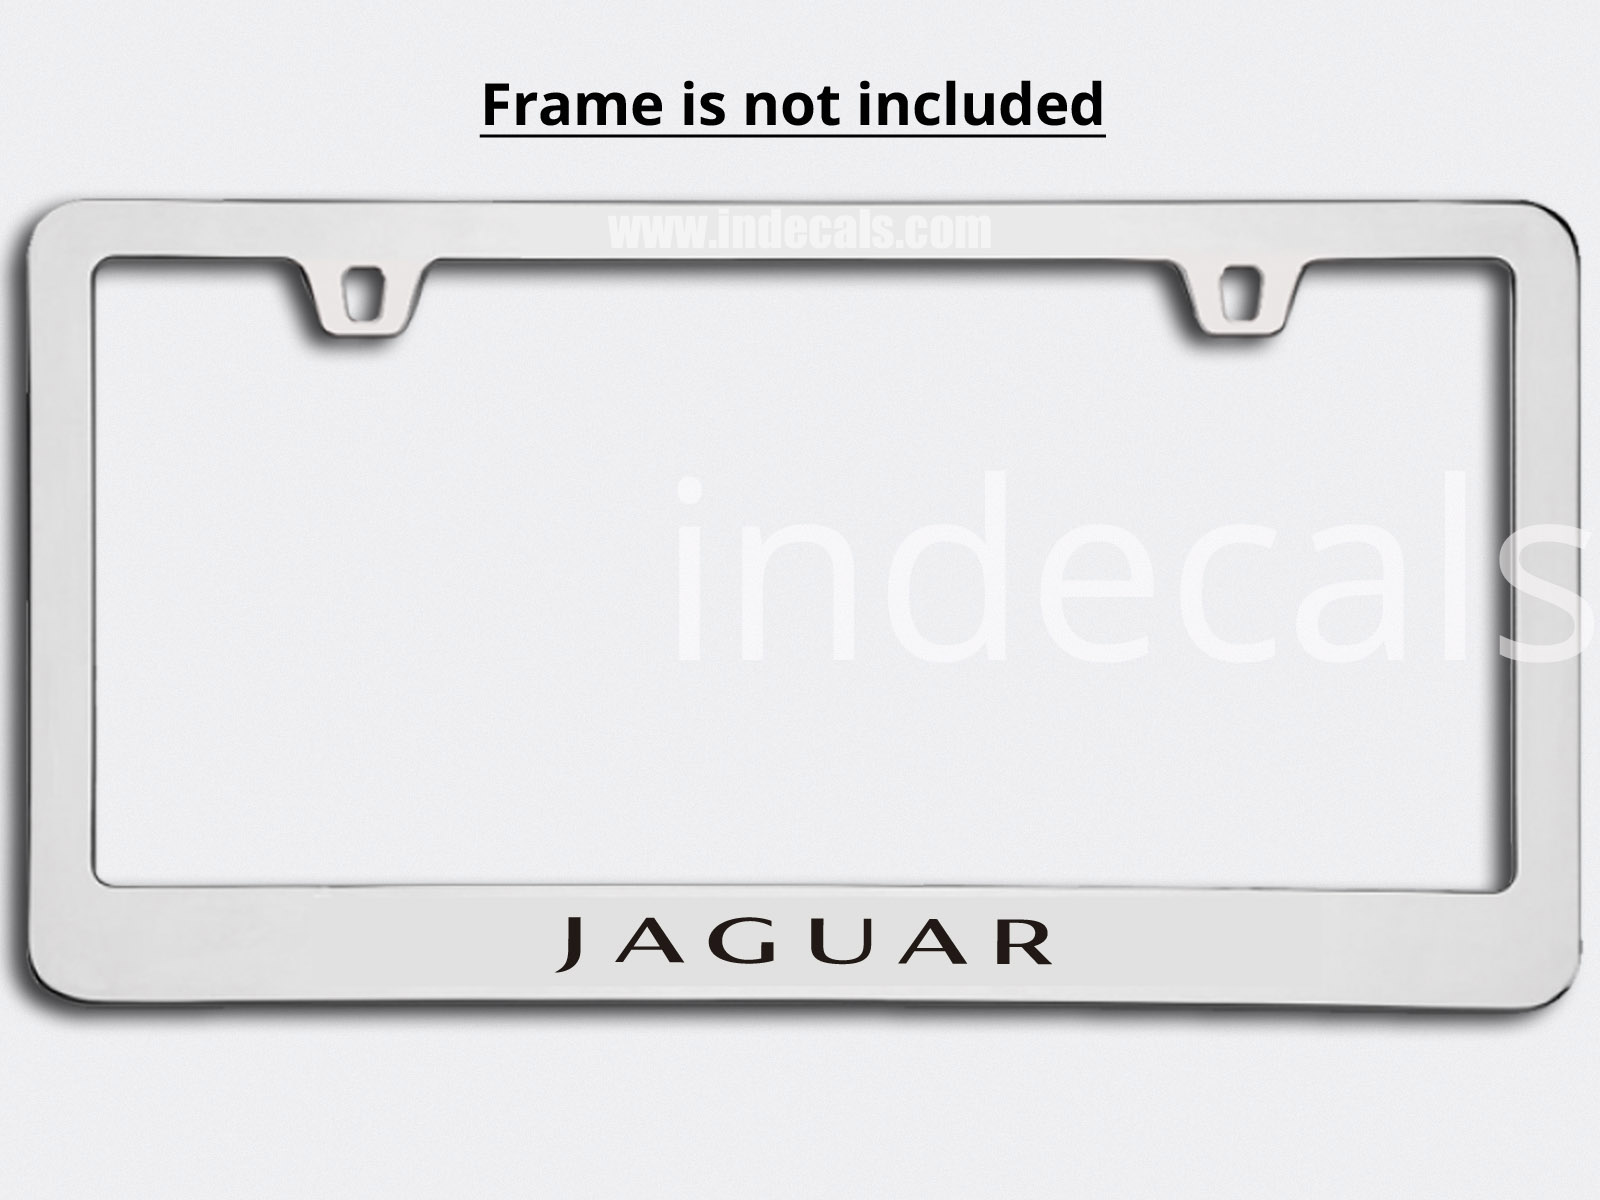 3 x Jaguar Stickers for Plate Frame - Black